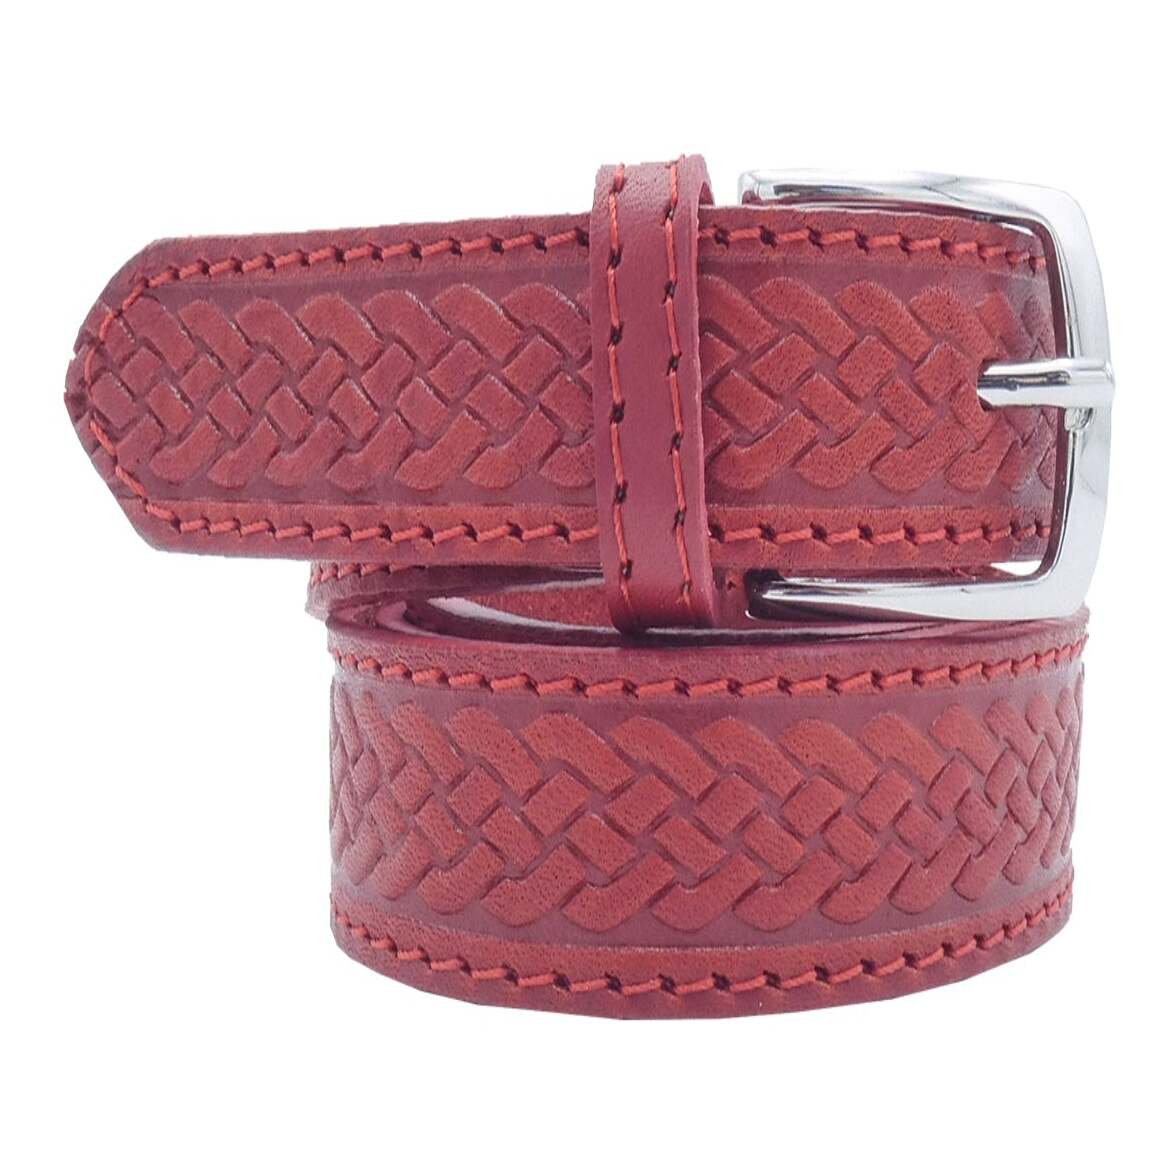 Cintura in cuoio Raffaello stampata a mano con fibbia artigianale in zama satinata